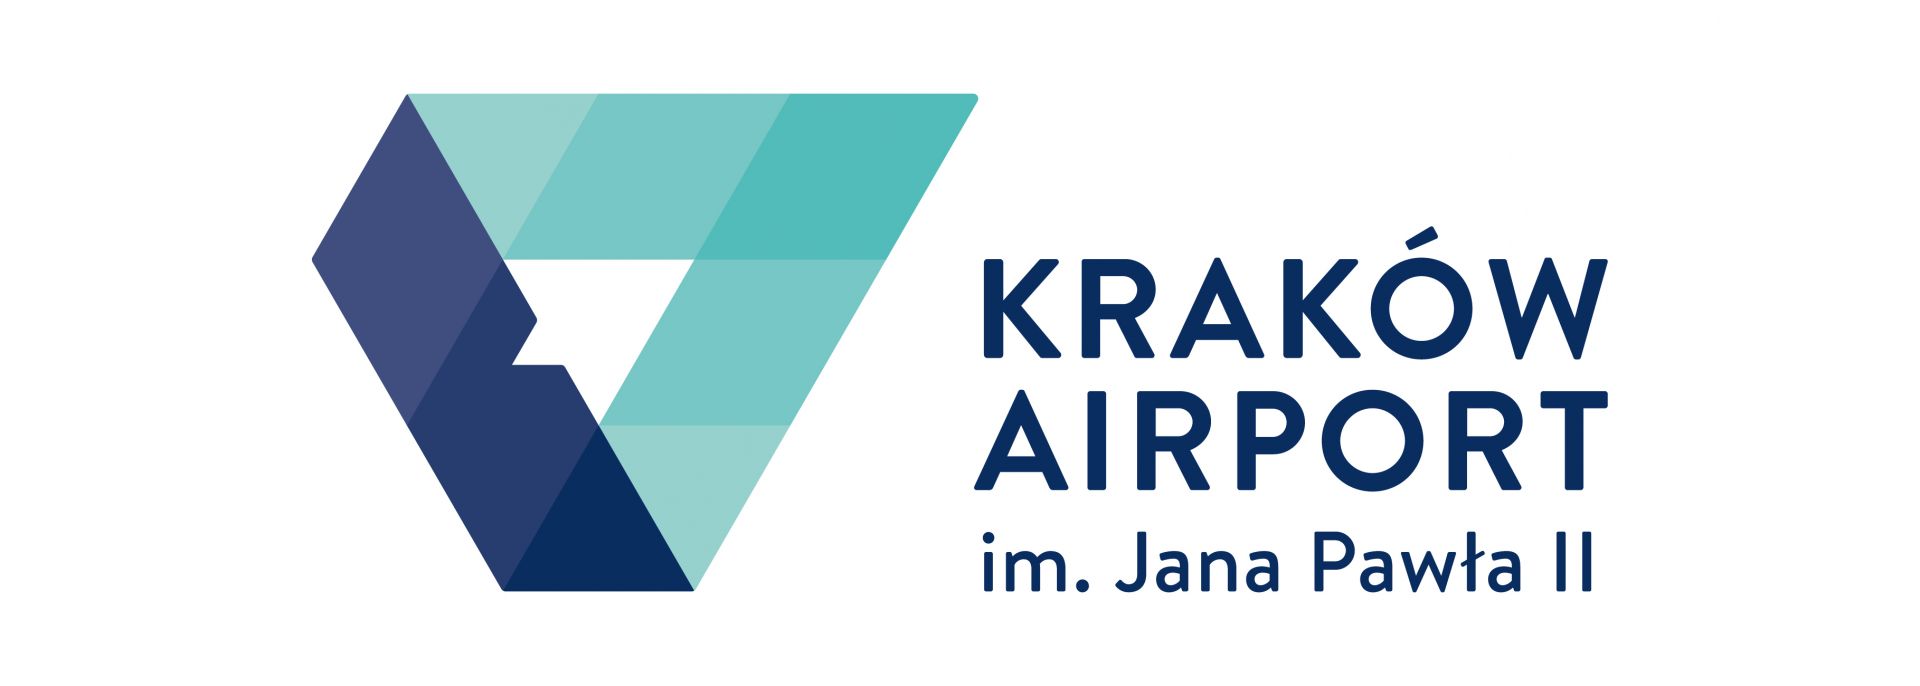 krakow-airport.jpg